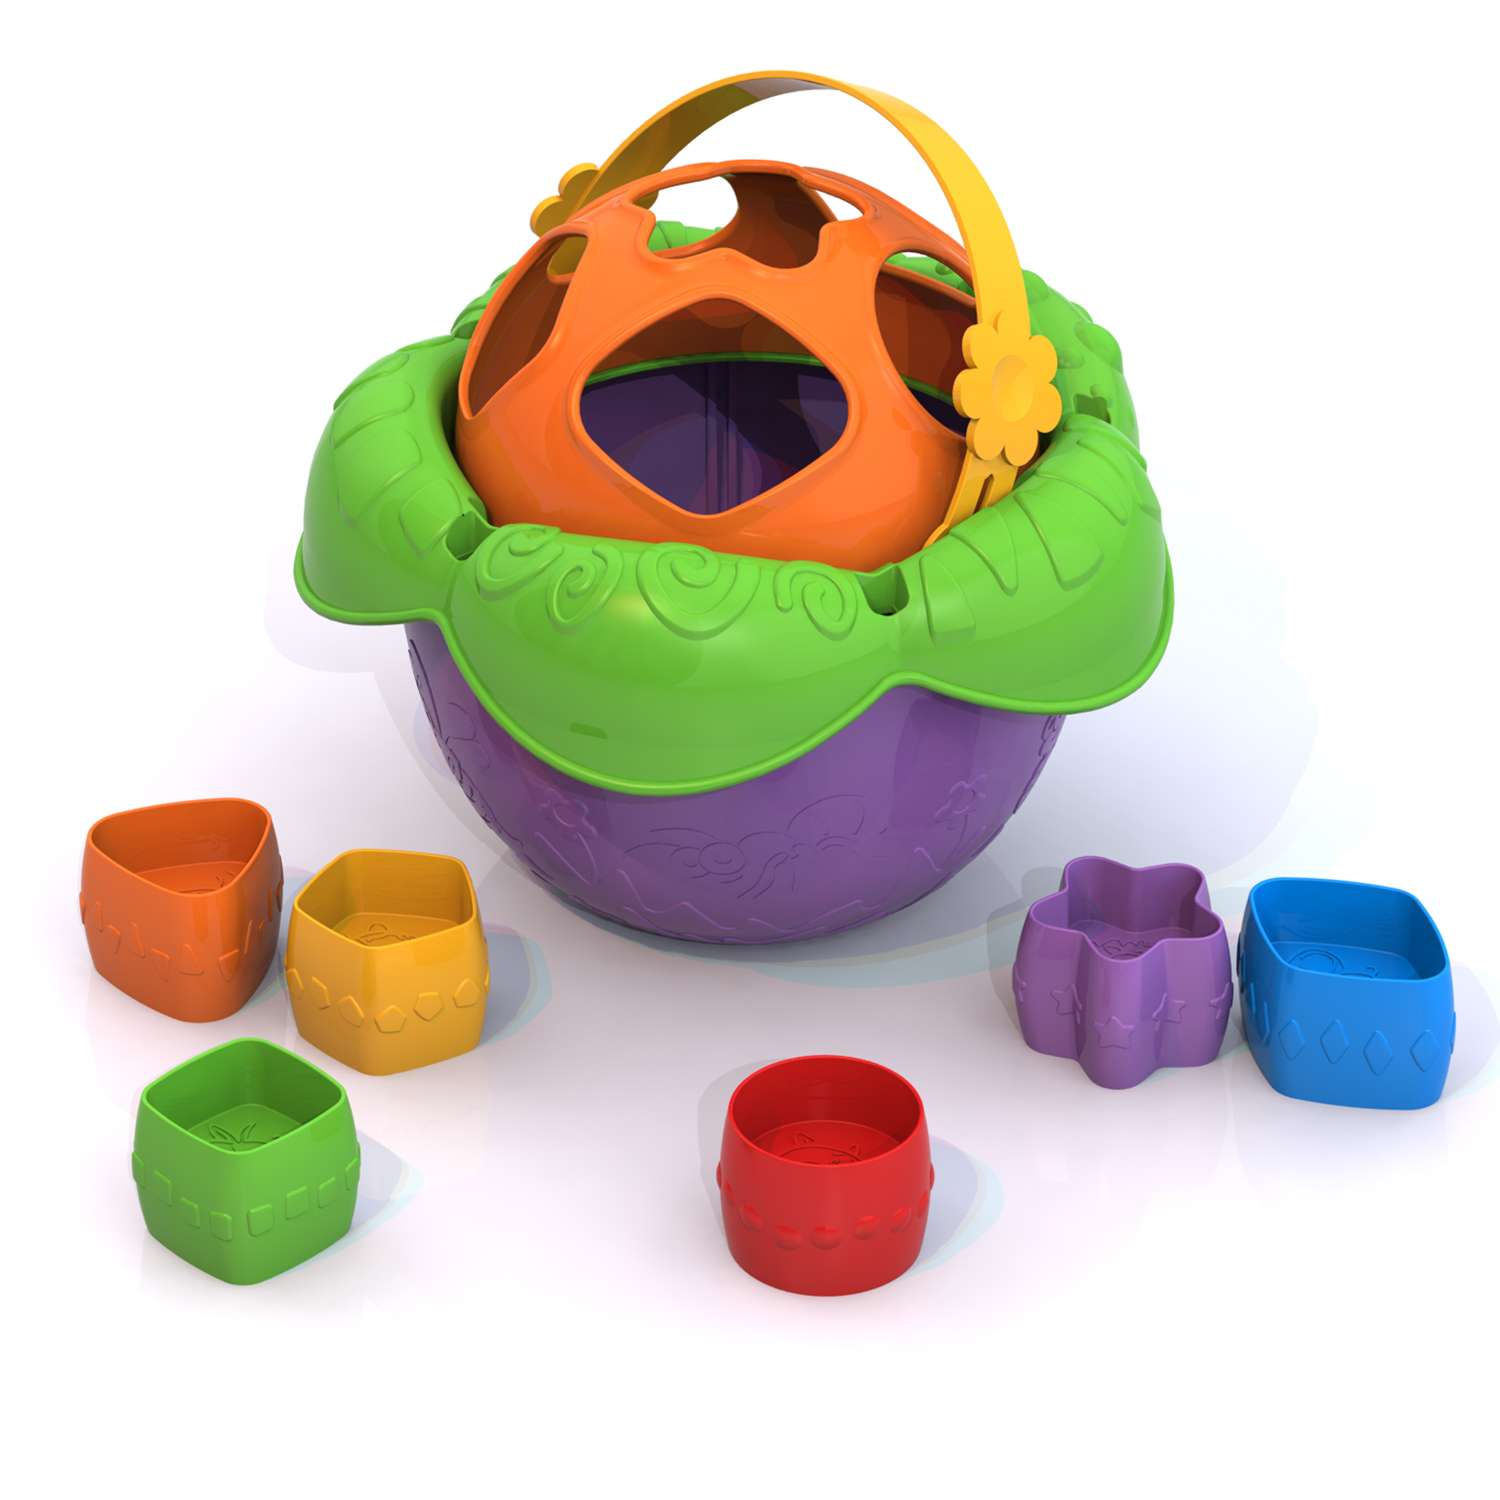 Дидактическая игрушка Нордпласт Ведро Цветочек в ассортименте - фото 1